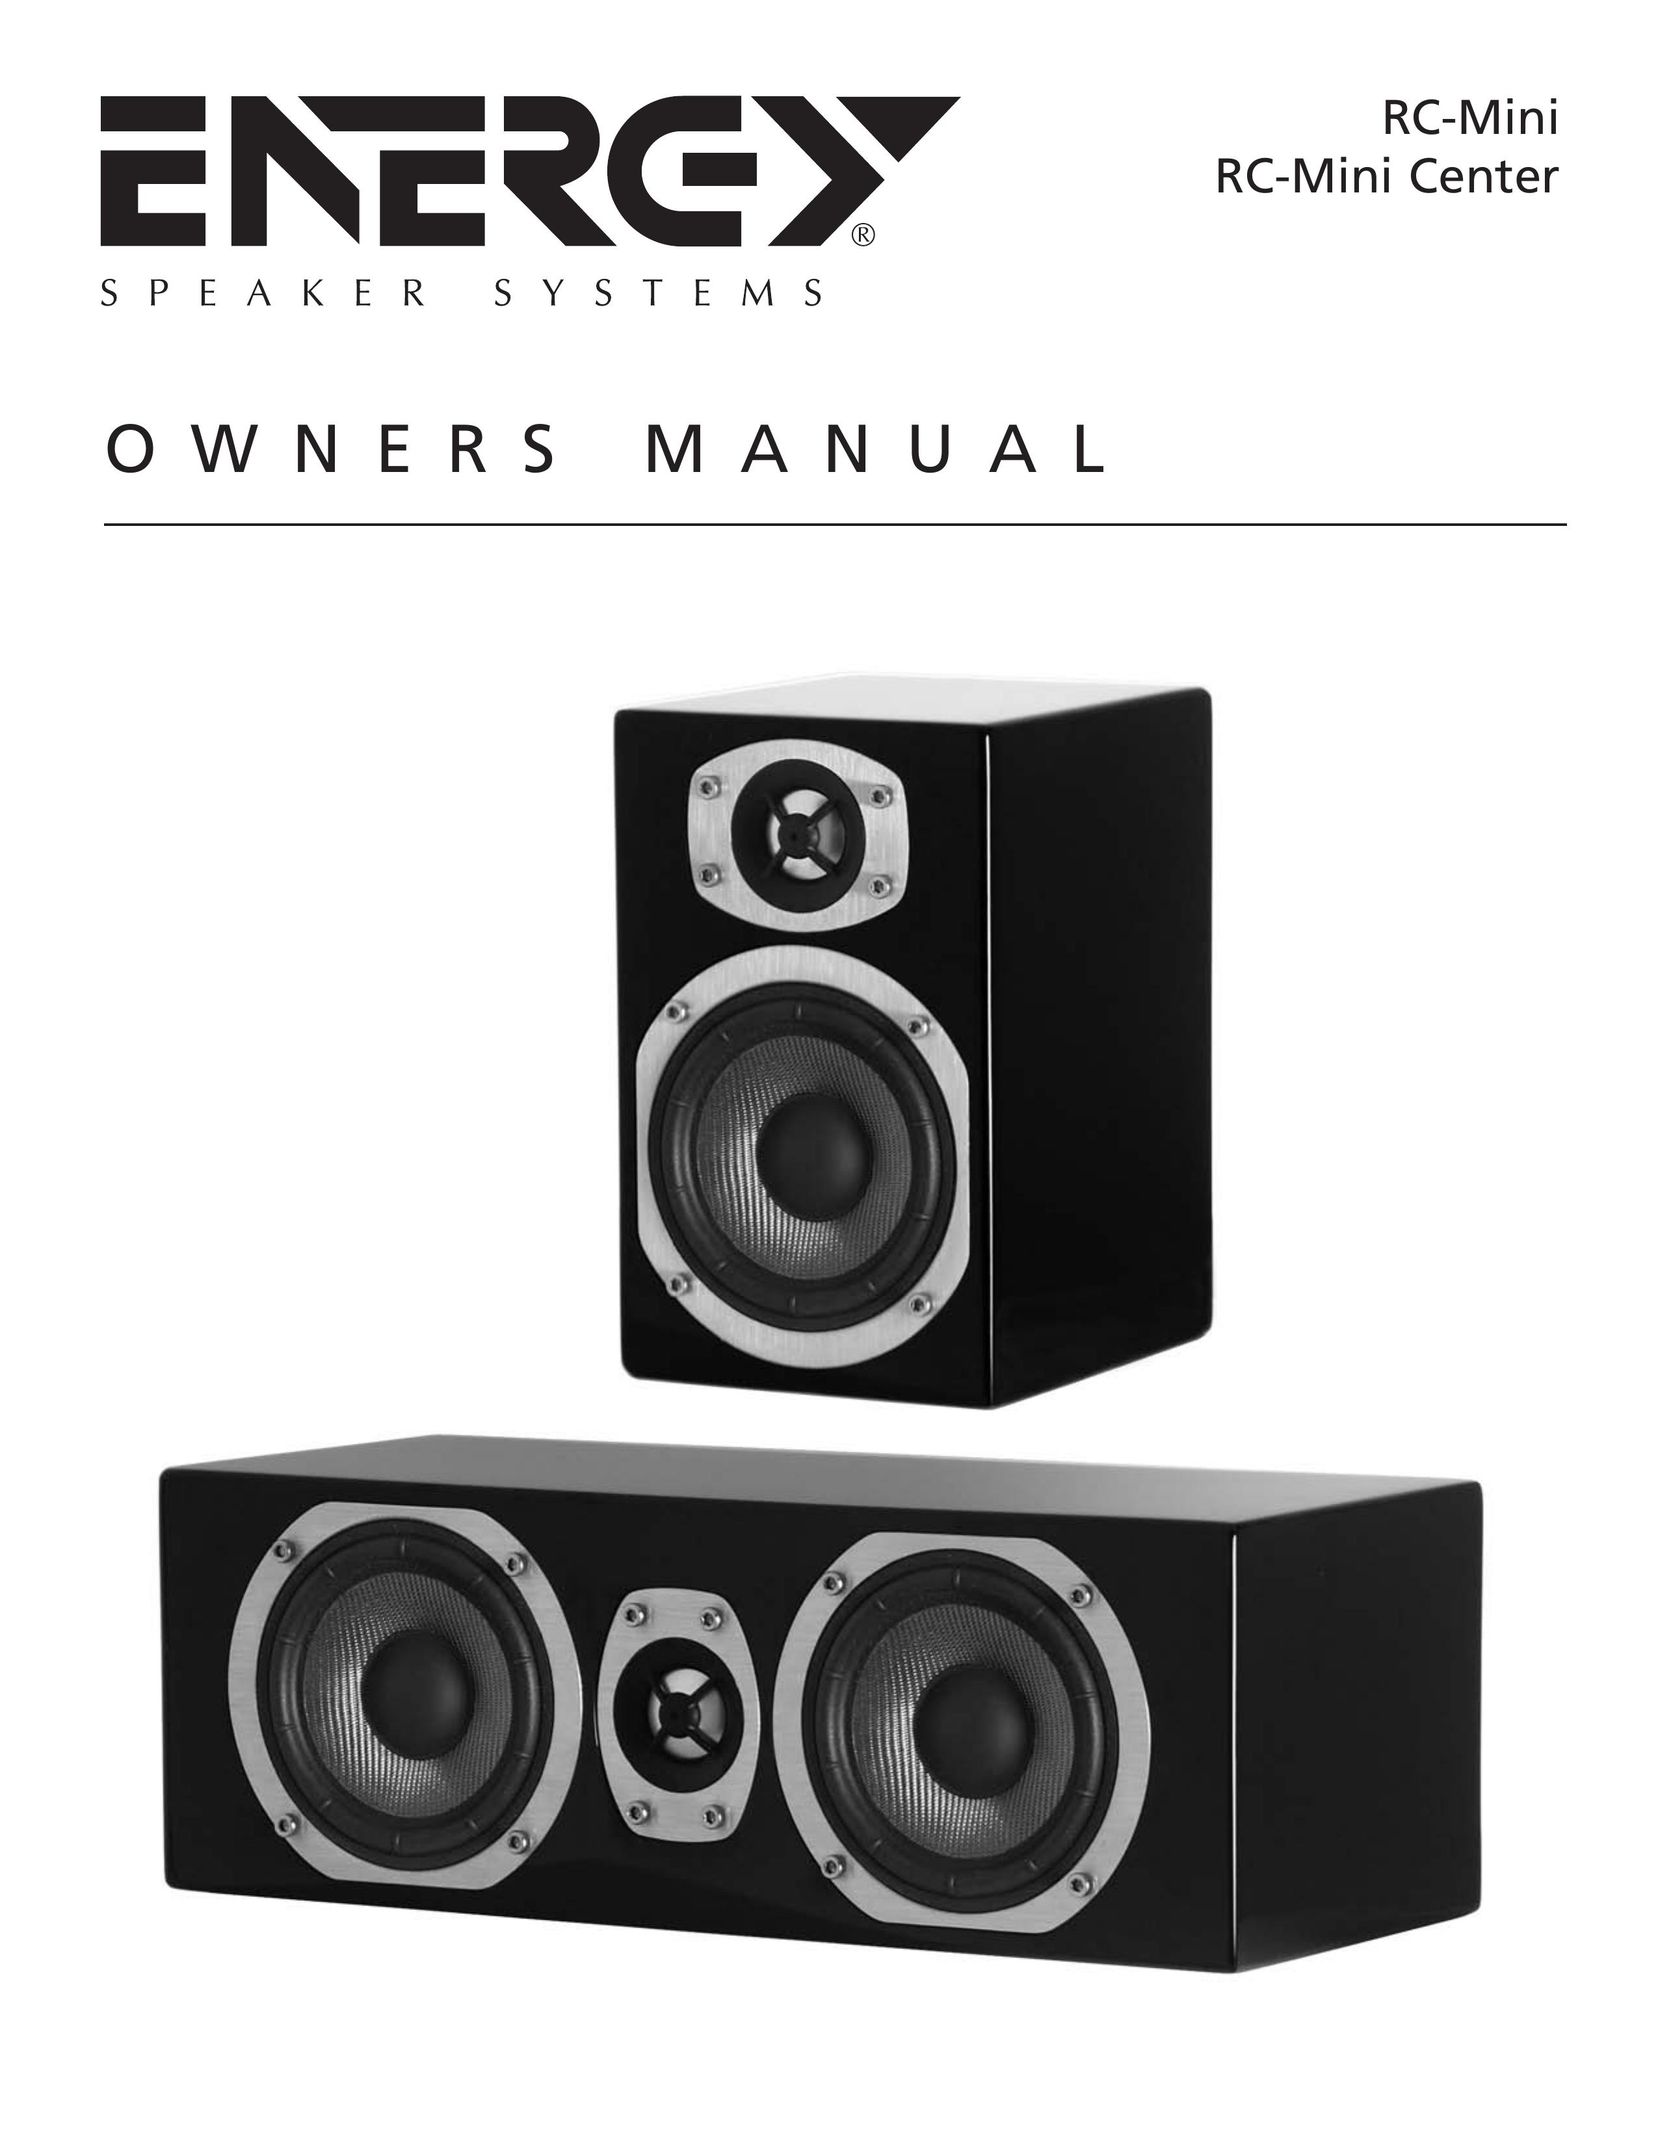 Energy Speaker Systems RC-Mini Center Speaker User Manual